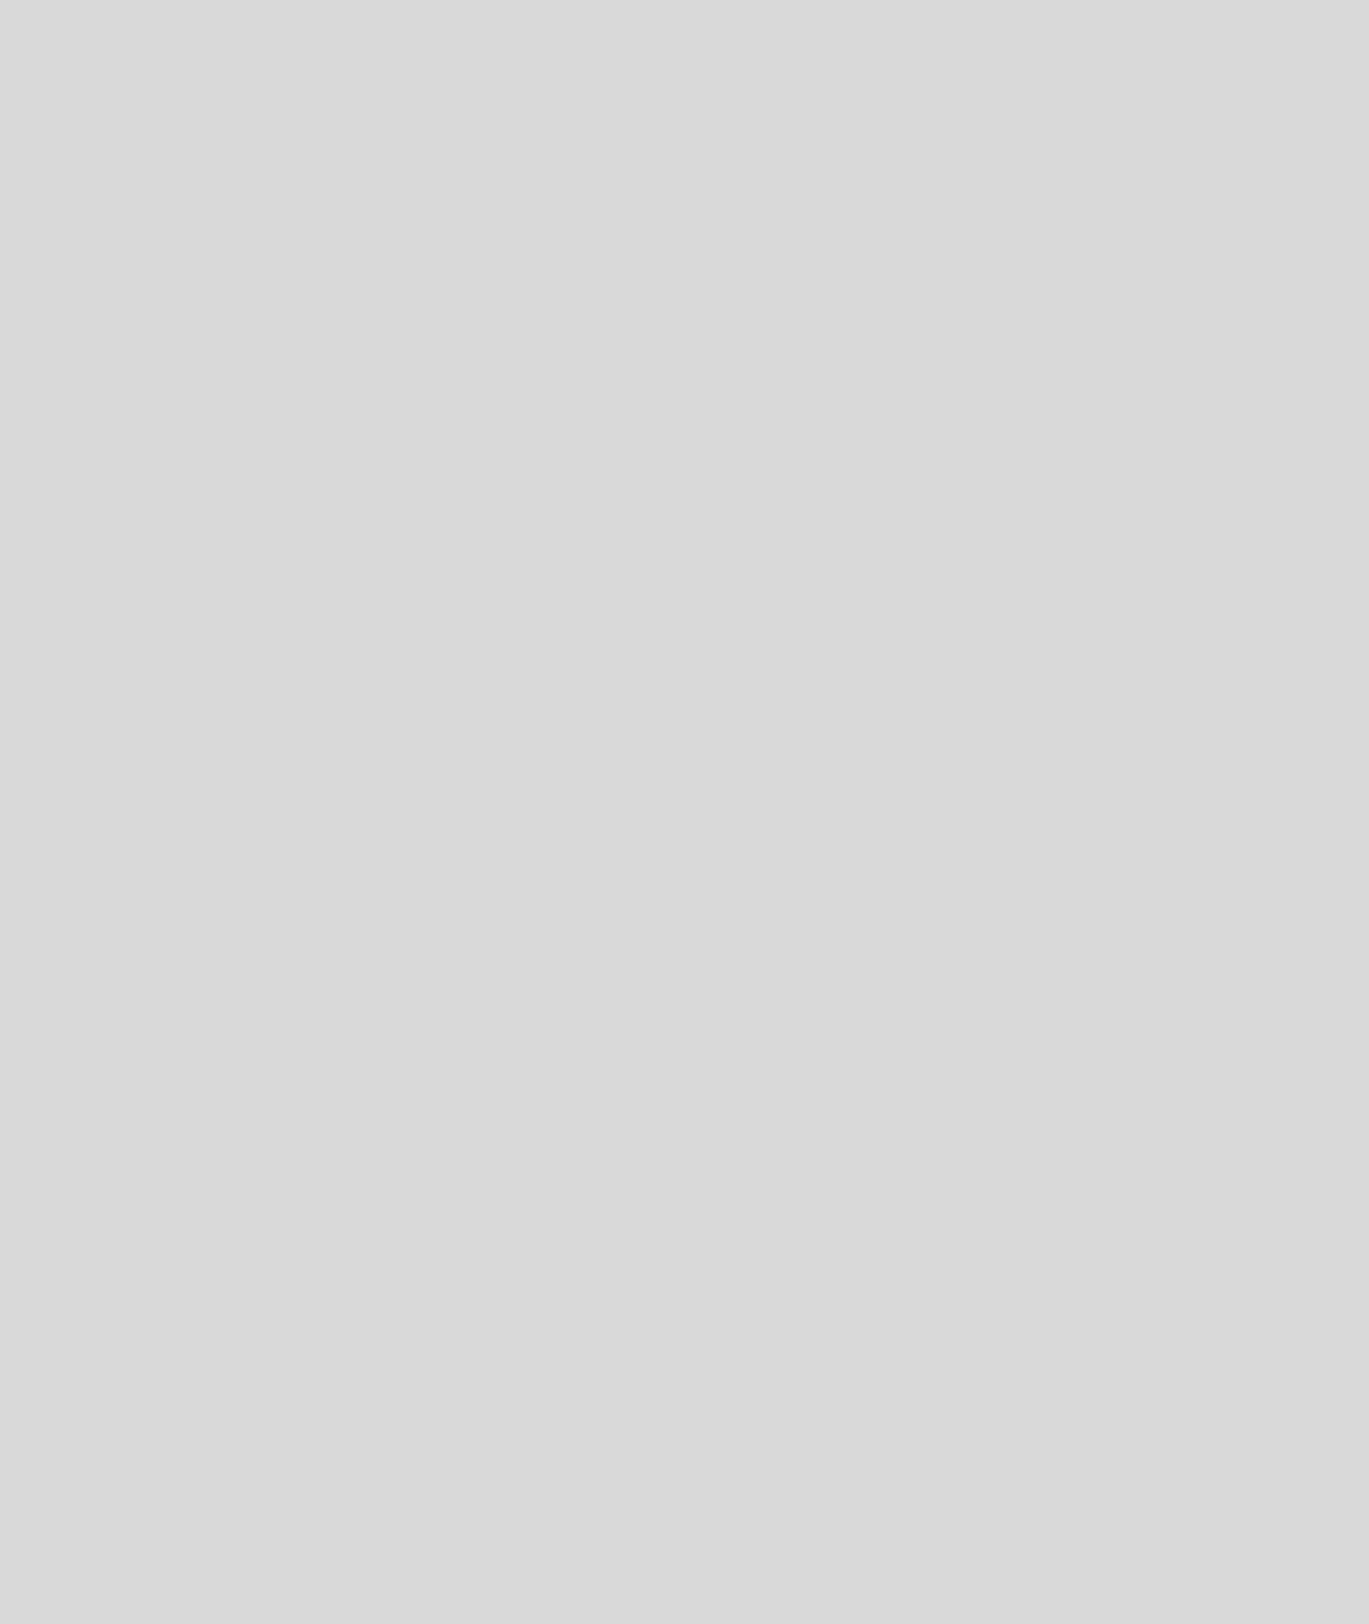 Государственная Третьяковская галерея, Москва
«Дважды стертый де Кунинг», 2000
акрил/холст. 300 x 240 x 8 см